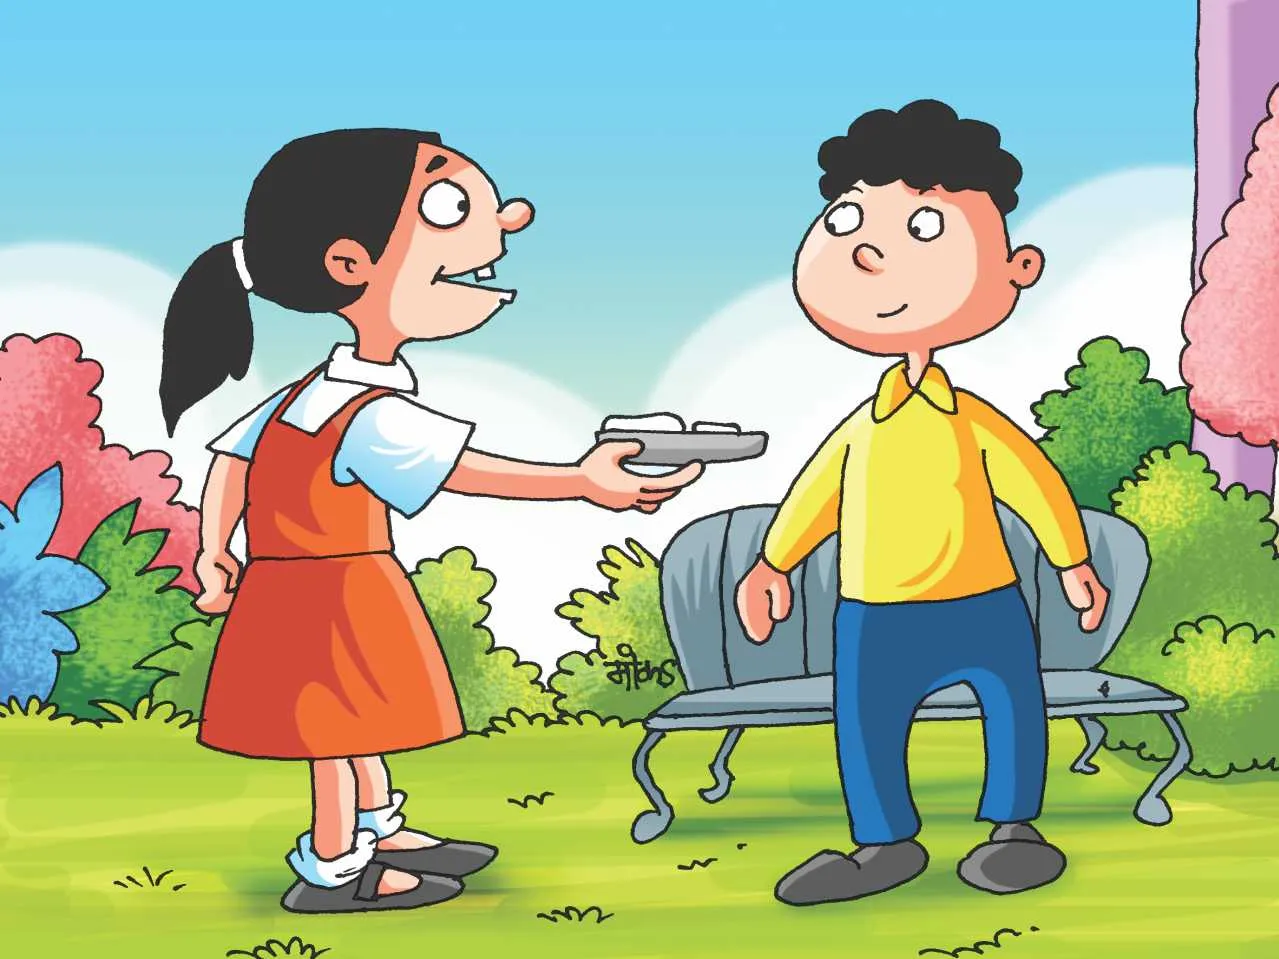 Kids in school cartoon image